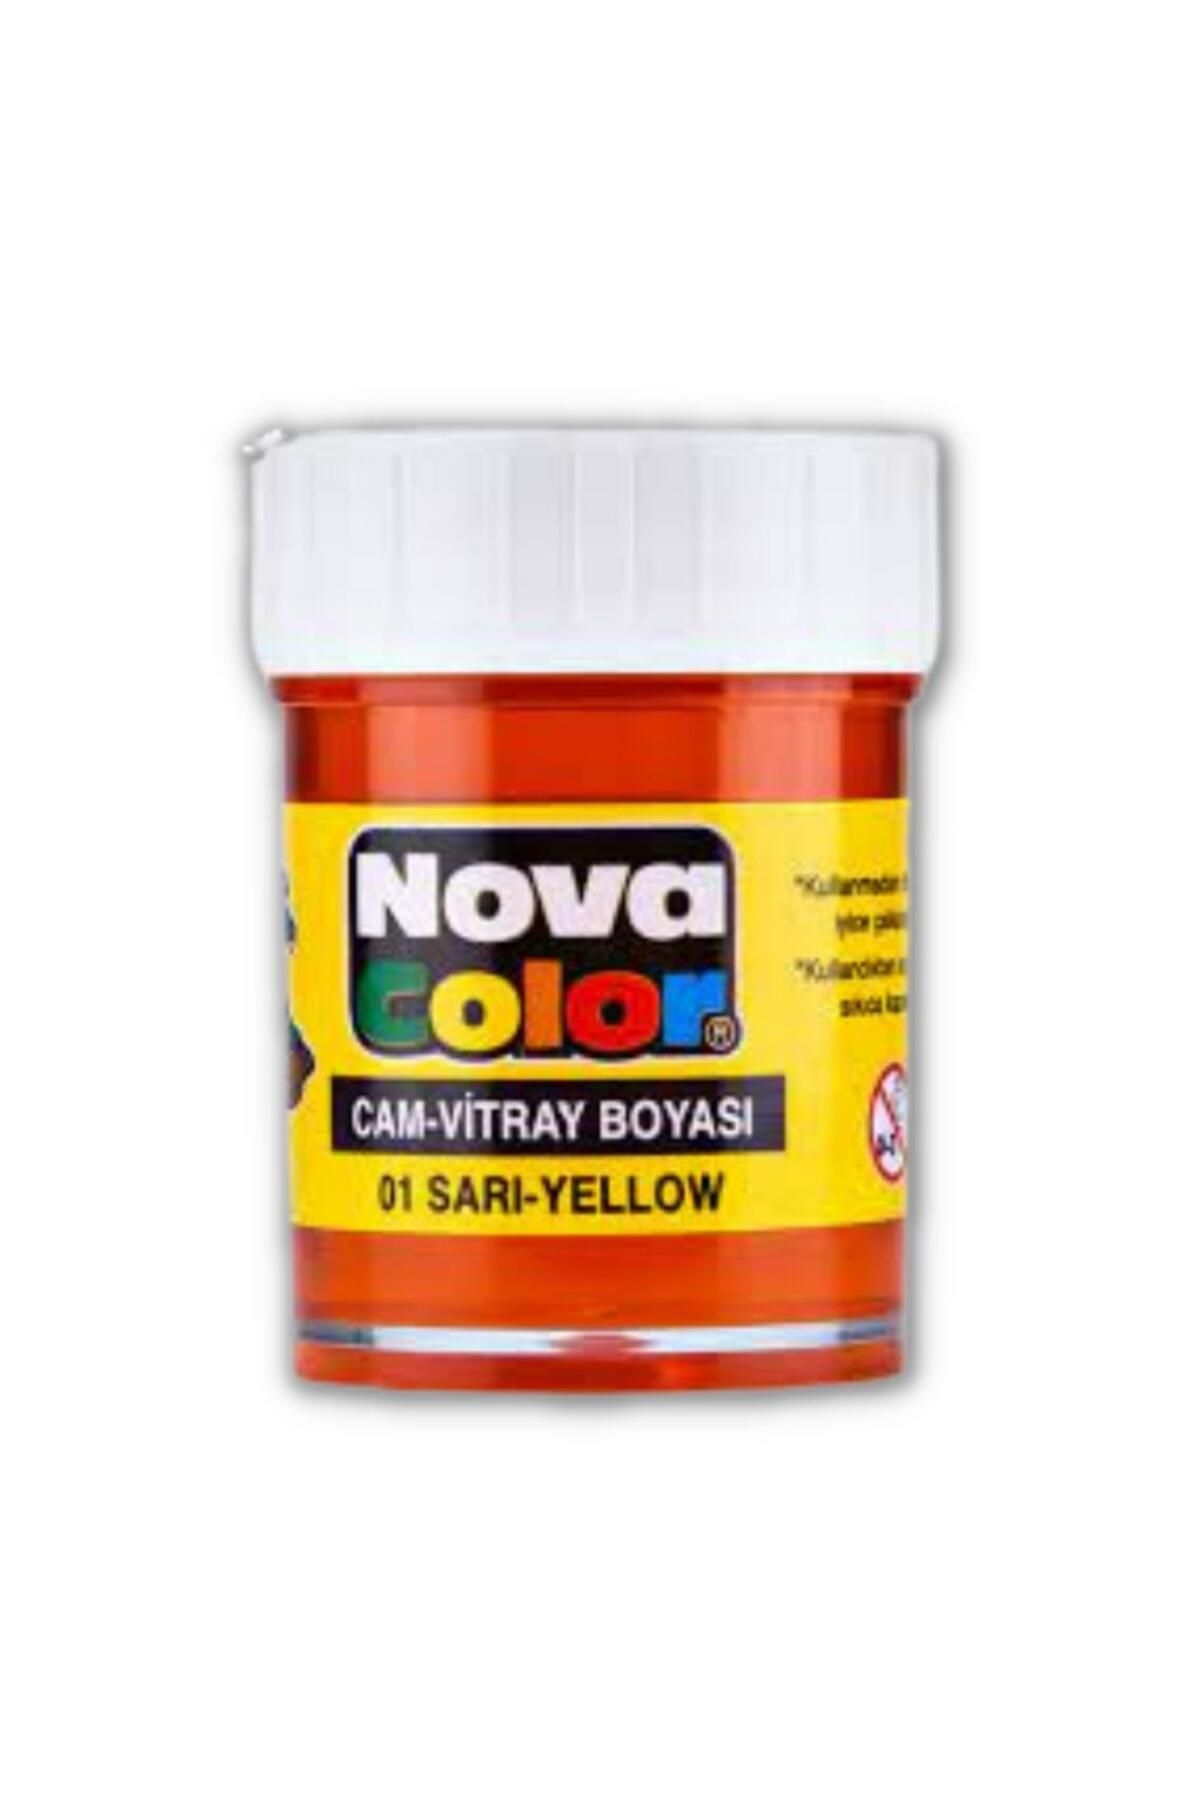 nova color Cam Boyası Vitray Boyası 25 ml 1 Adet Nova Color Su Bazlı Renkli Cam Vitray Boyası 1 Adet 25 ml